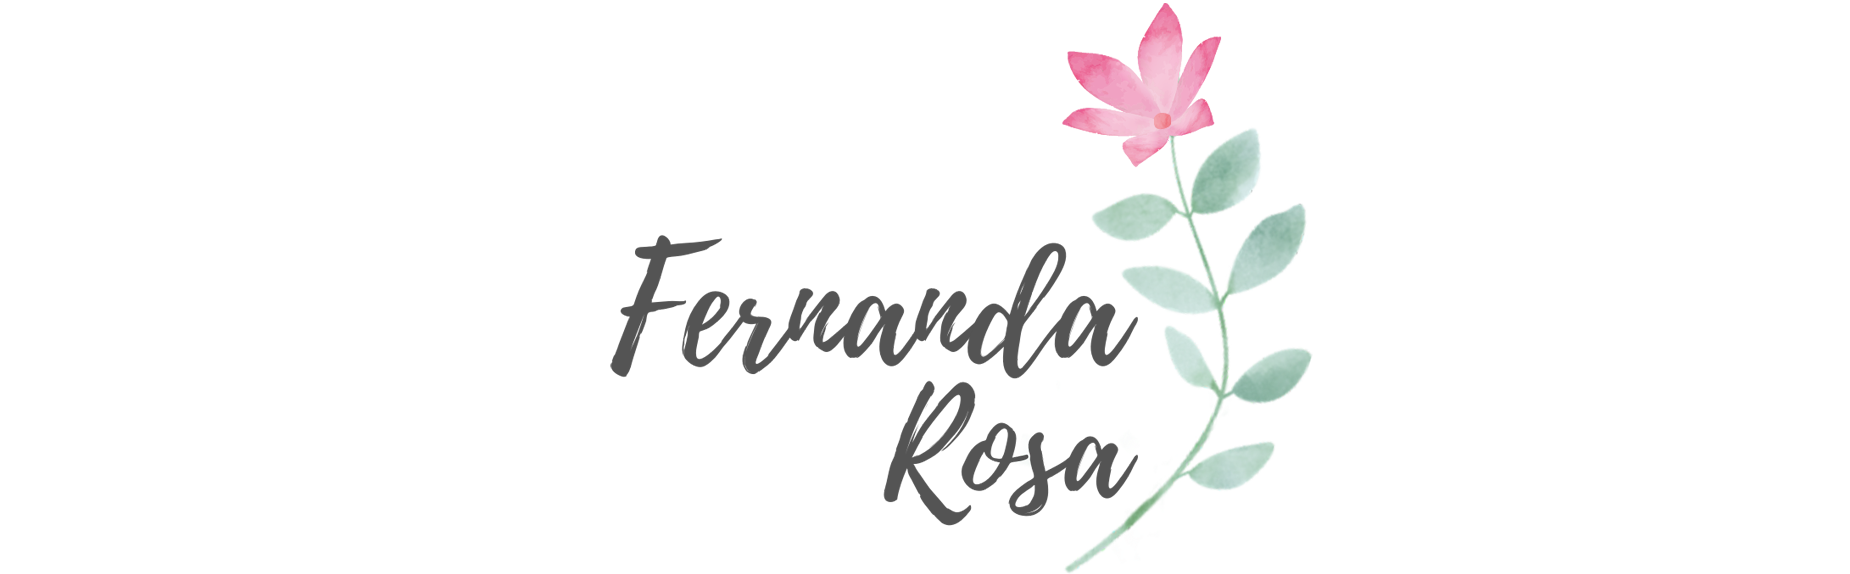 Fernanda Rosa